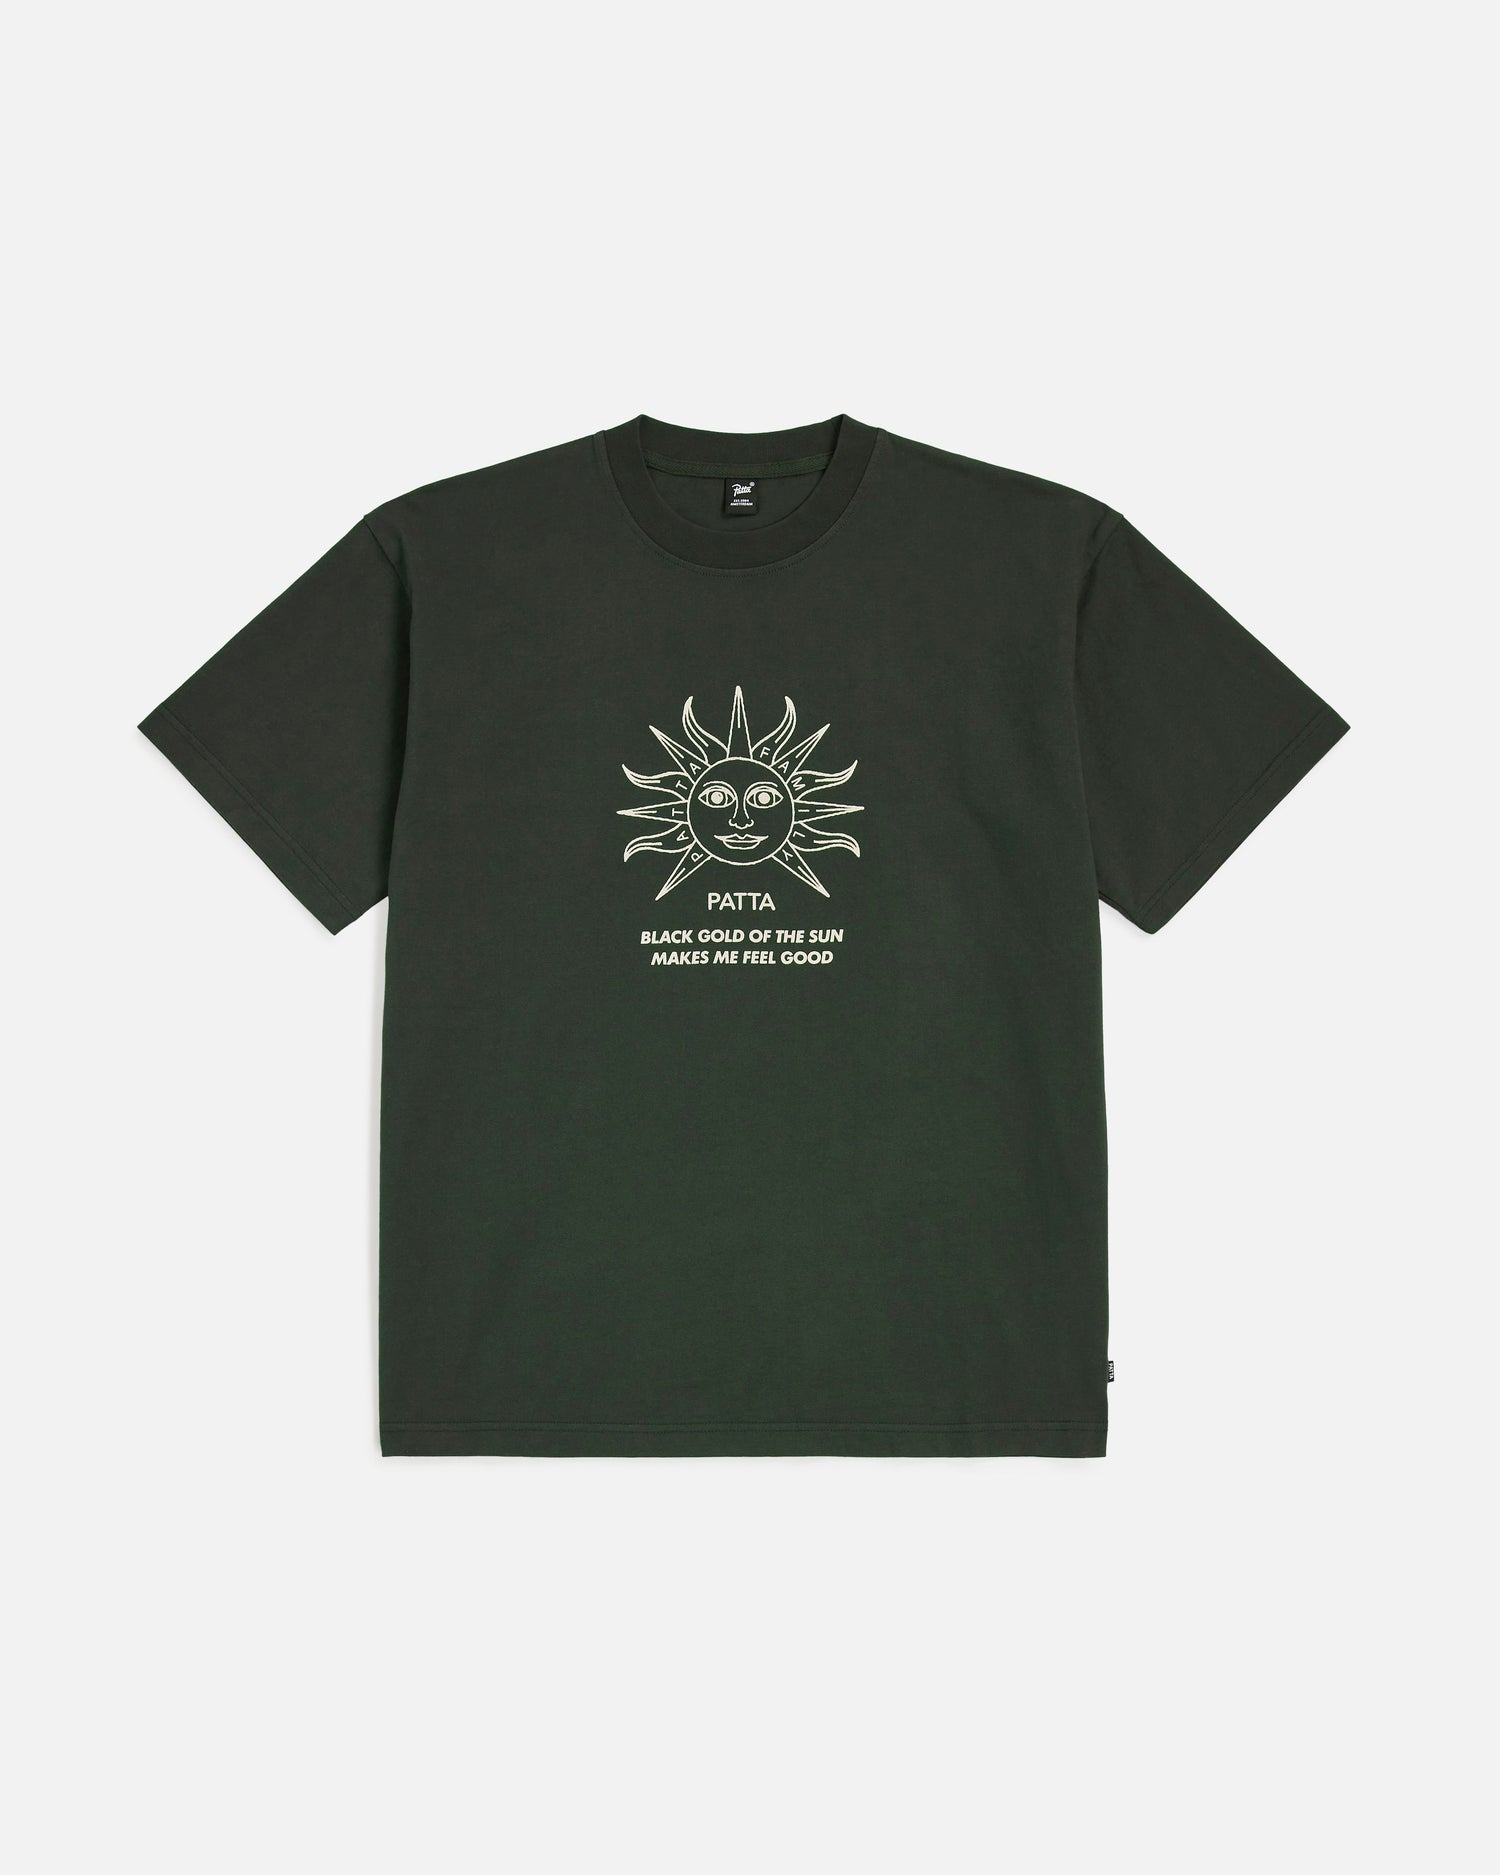 T-shirt Patta Black Gold Sun (Pirata Nera)